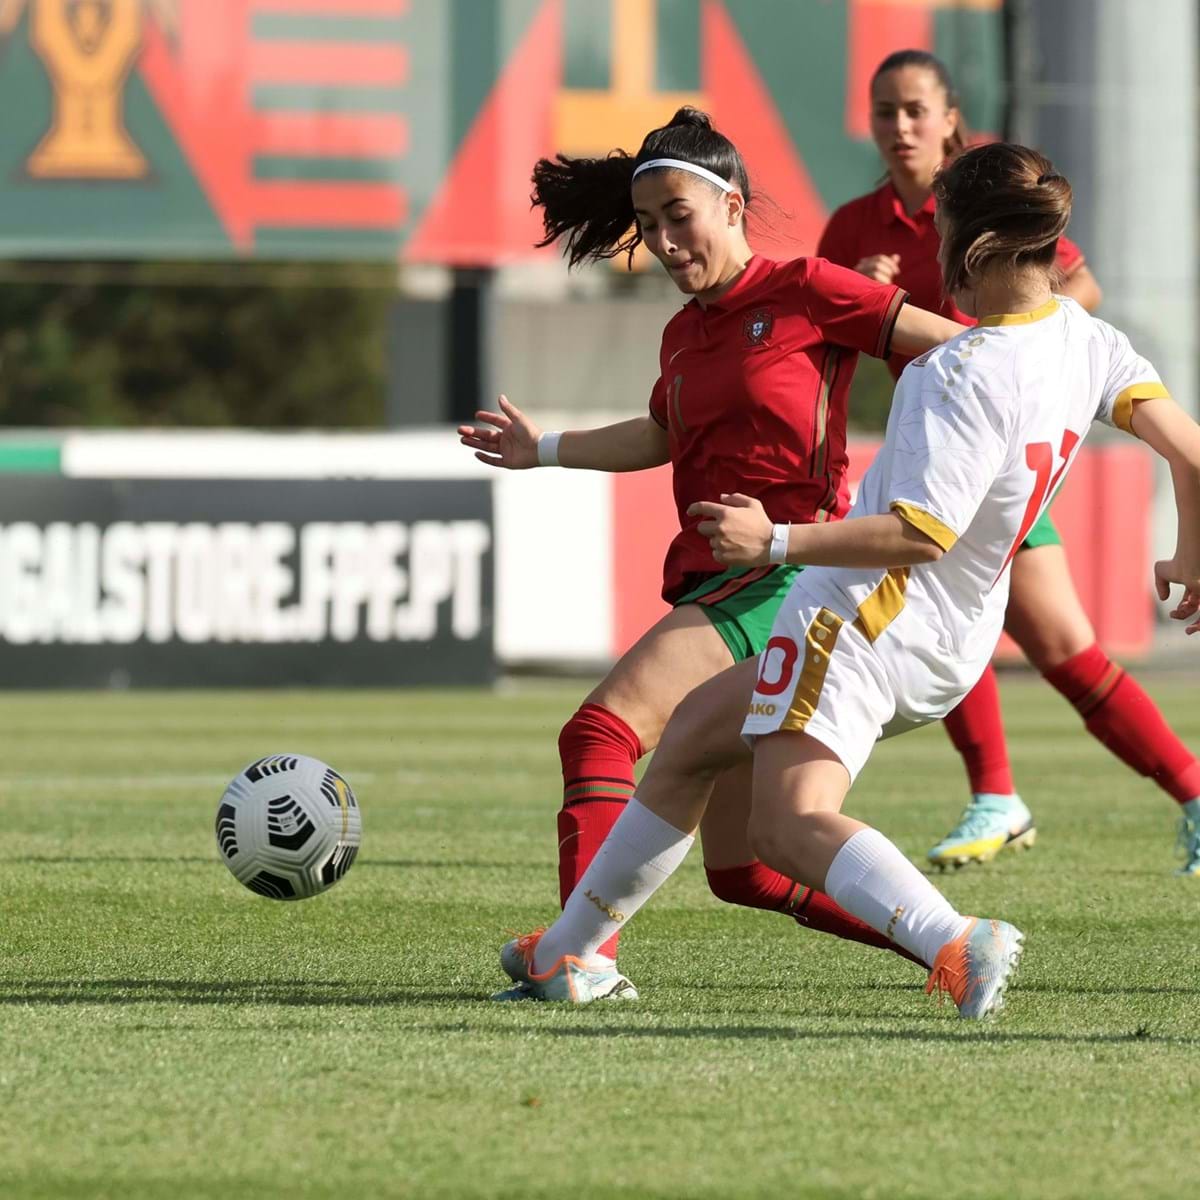 Seleção sub-17 feminina de Portugal vence República Checa com golo